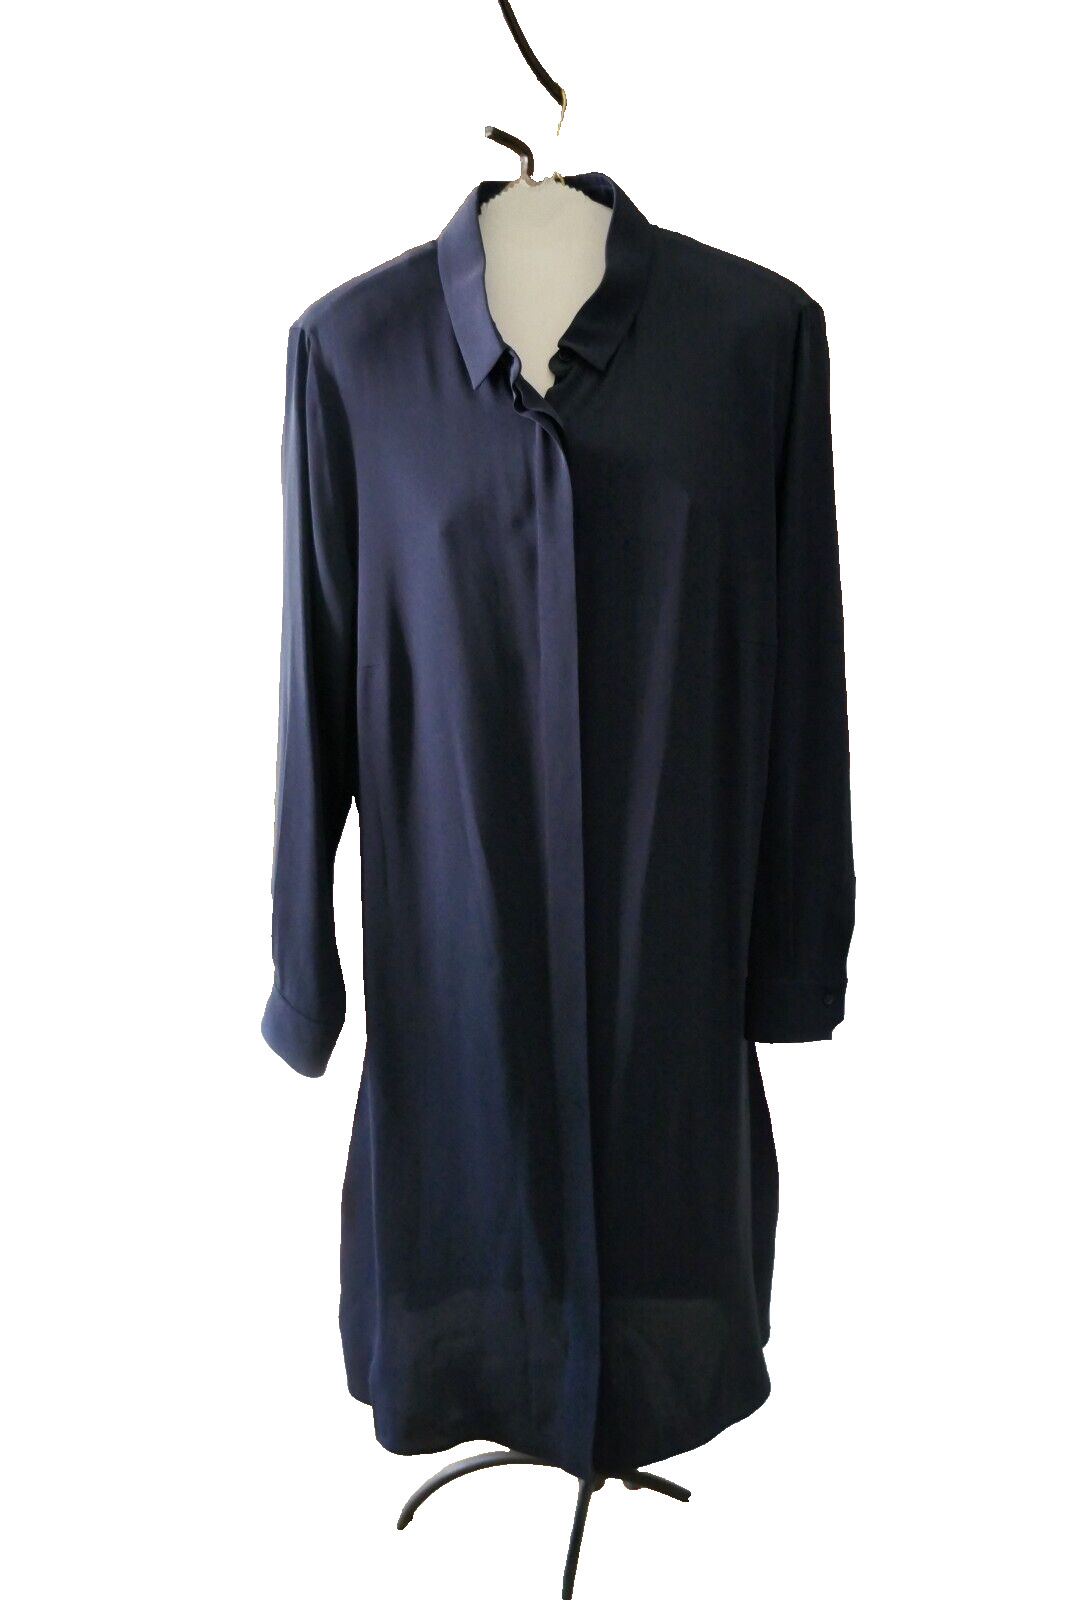 AKRIS dark navy Blue Pink panels Shirt Dress Seide Mulberry Silk size 16